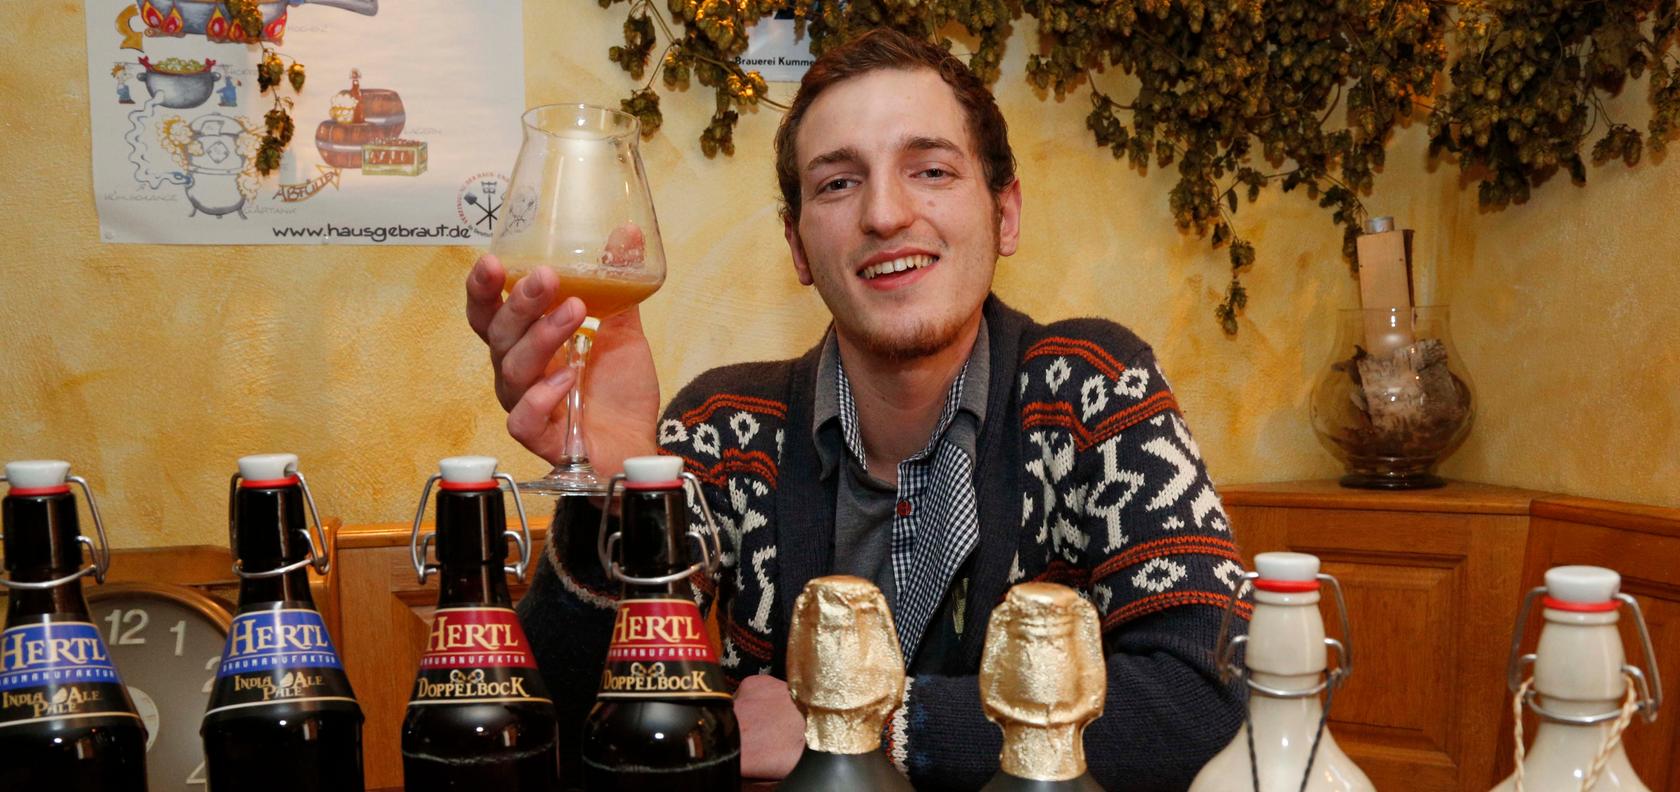 Bier ist sein Element: Frankens kleinste Biermanufaktur